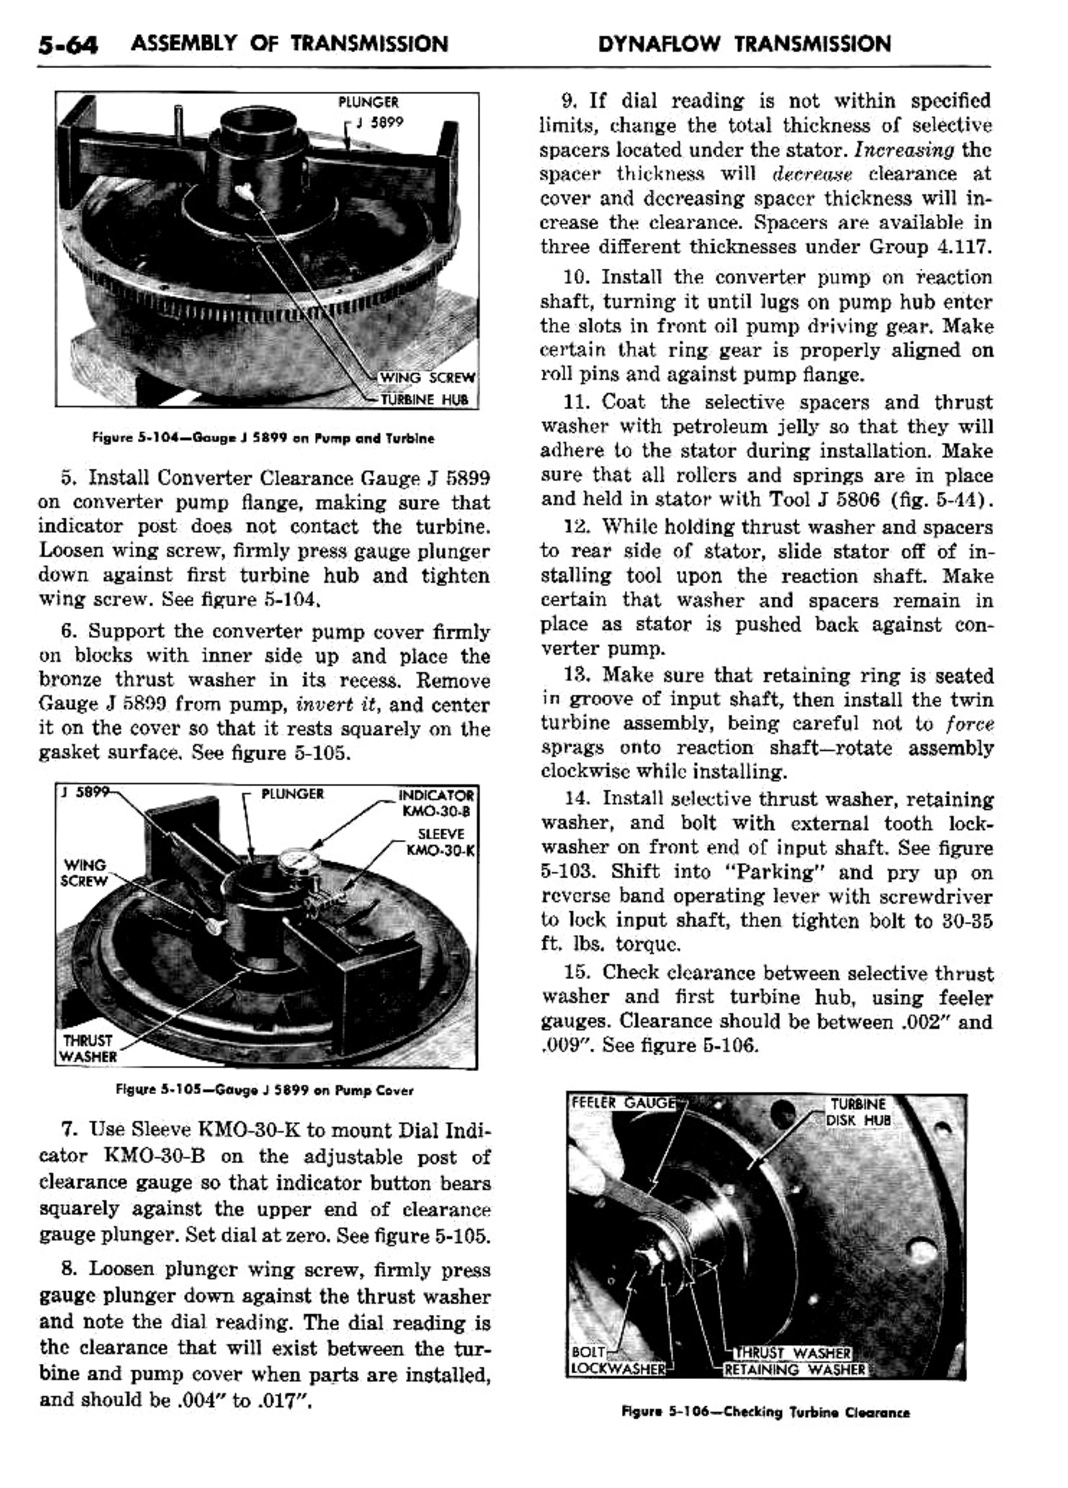 n_06 1957 Buick Shop Manual - Dynaflow-064-064.jpg